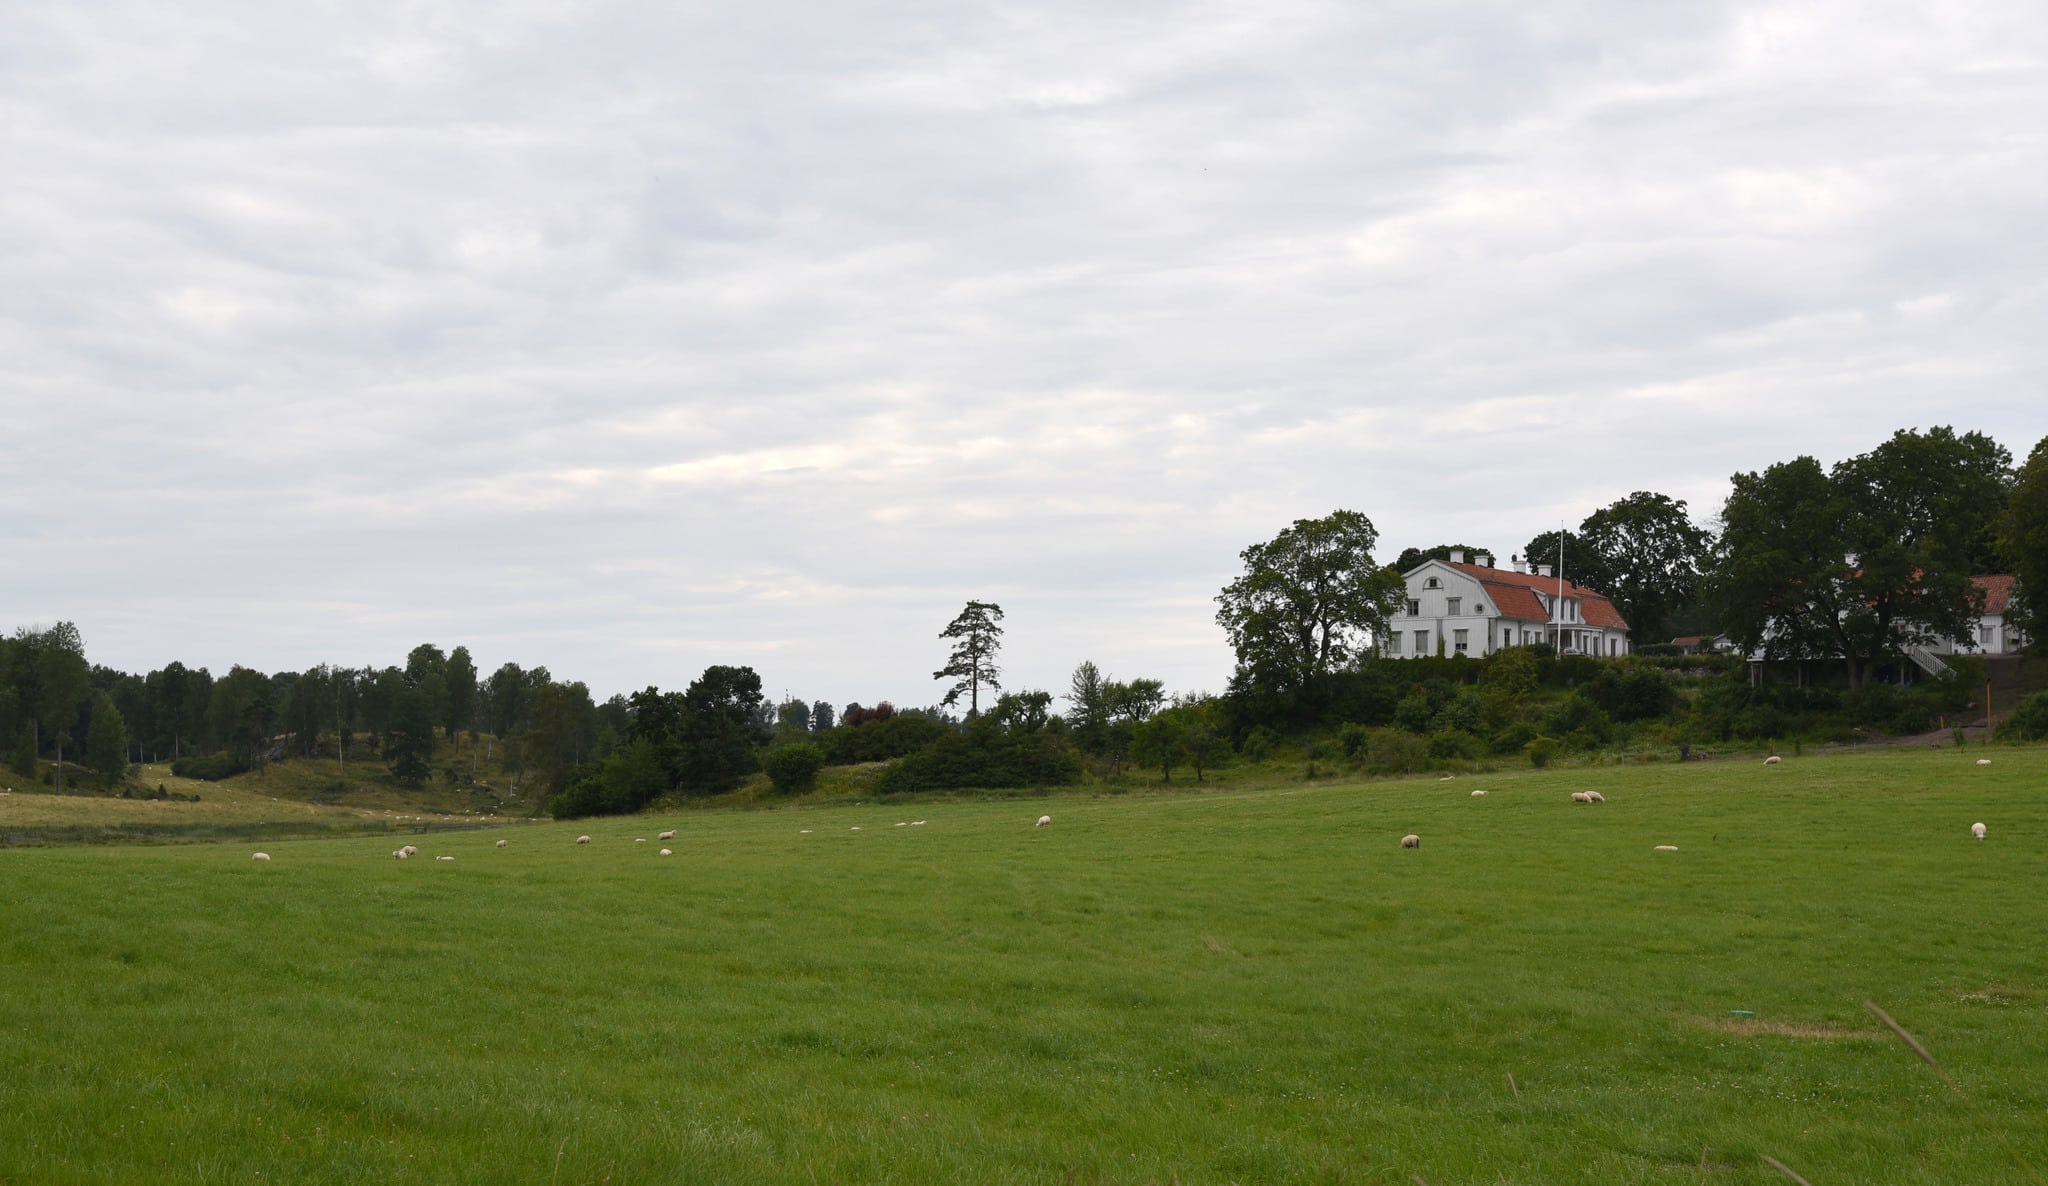 Molstaberg gård har drabbats av tre vargattacker på får sedan midsommar. Foto: Martin Källberg